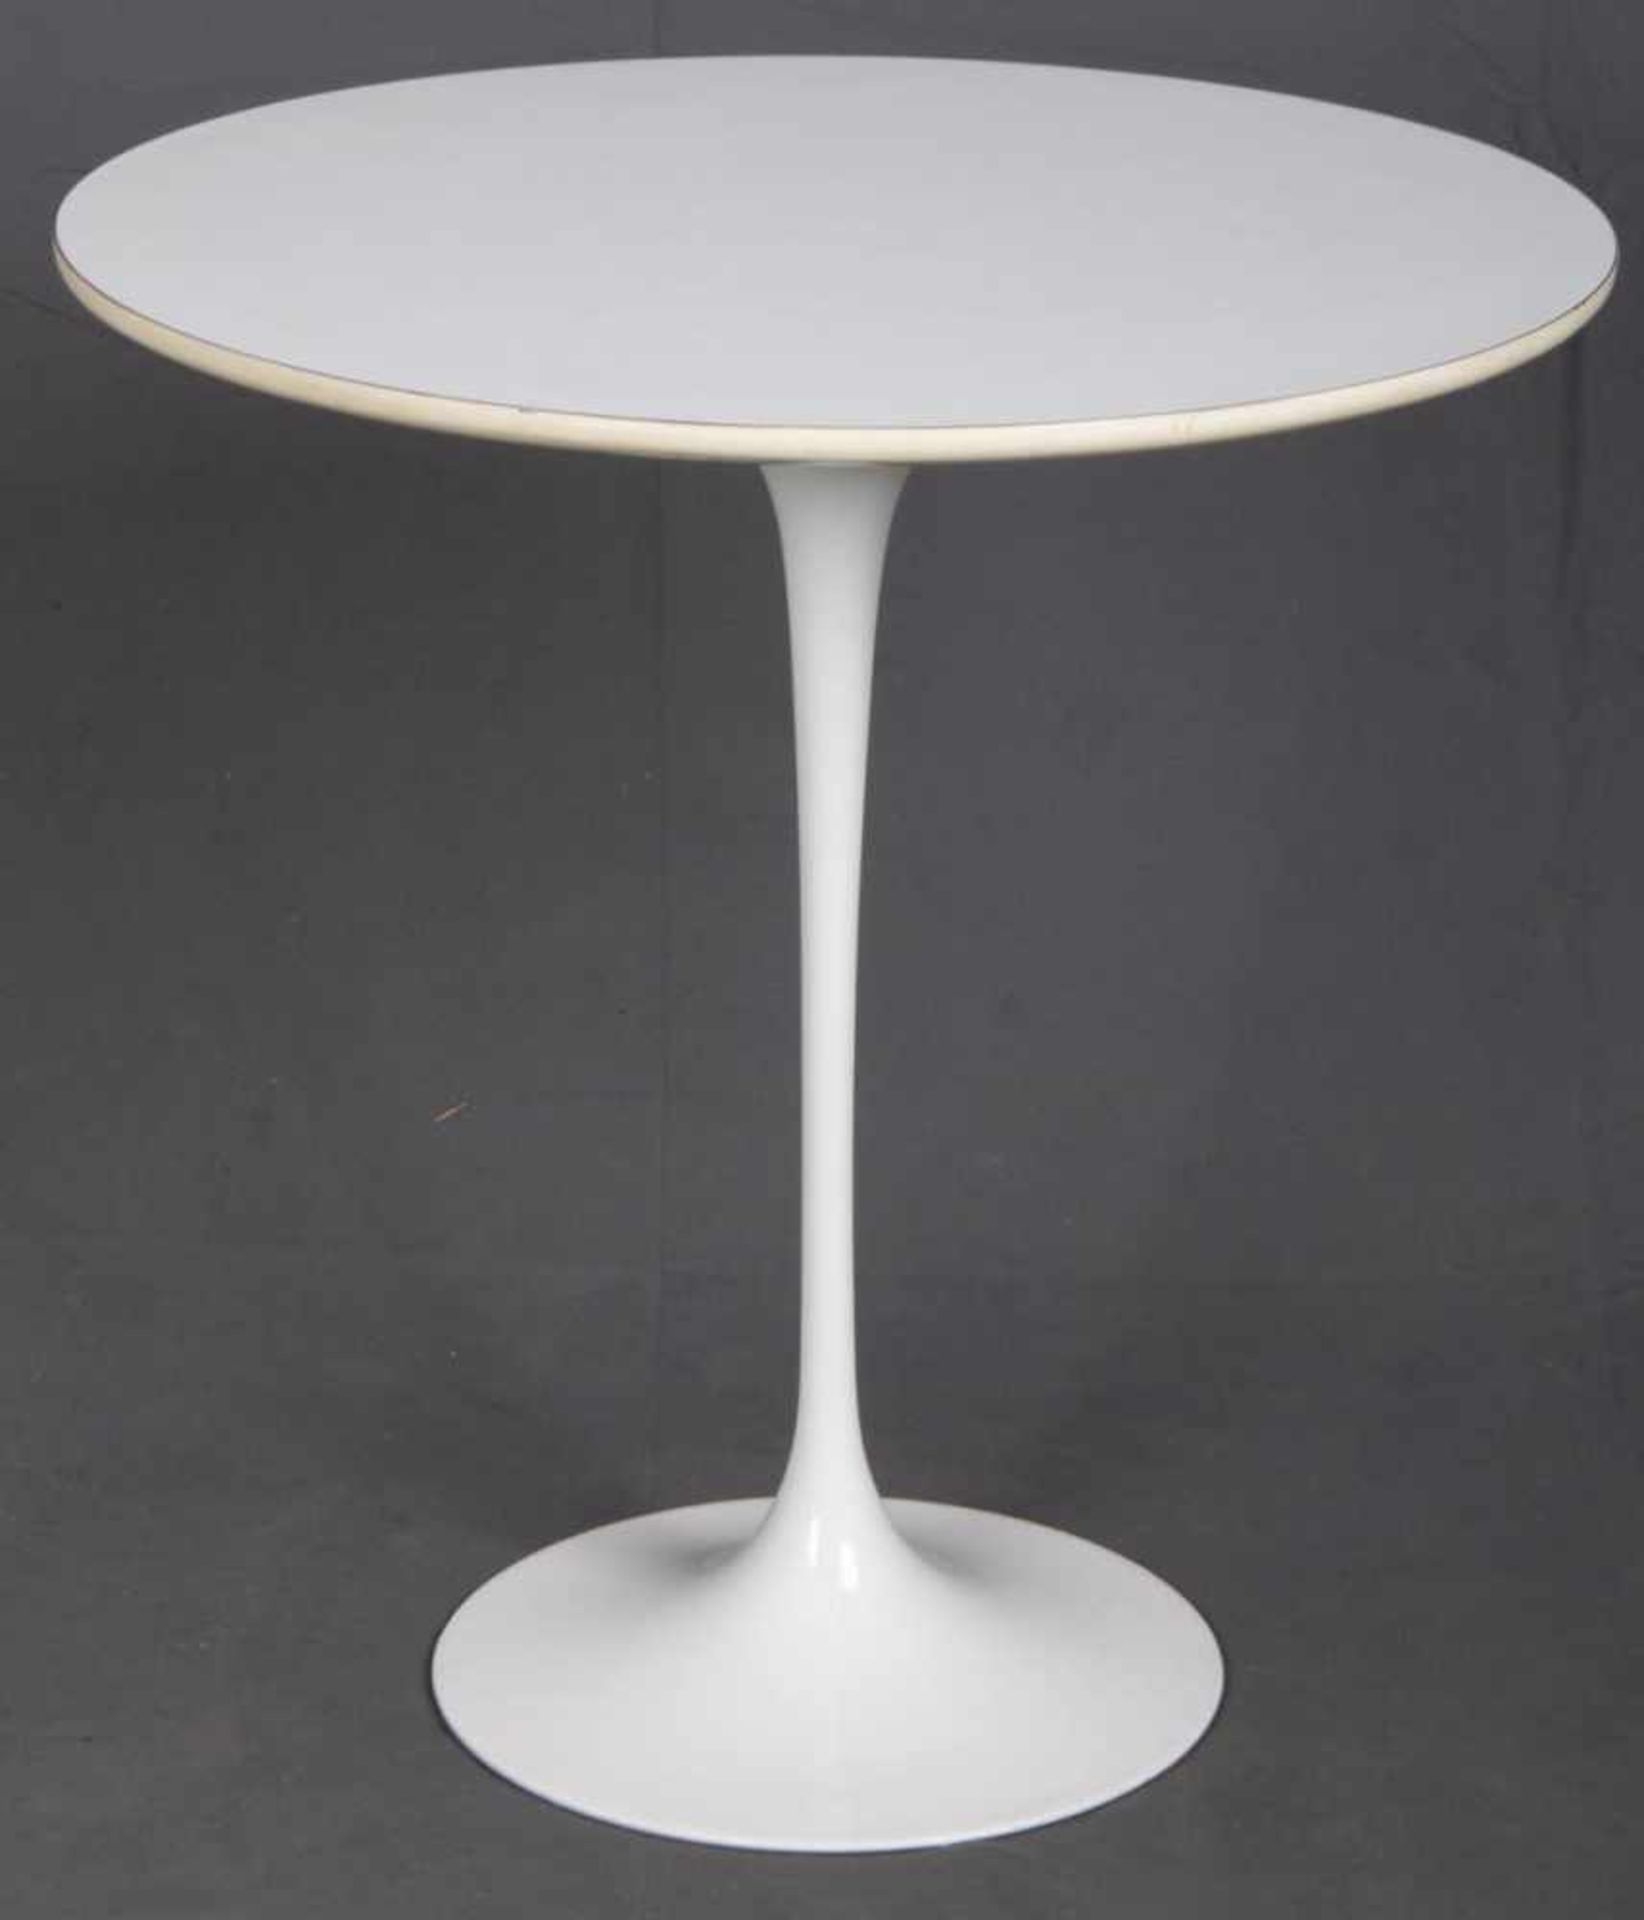 Beistelltisch "TULIP TABLE", Entwurf von Eero Saarinen (1910 - 1961), 1956 für Knoll